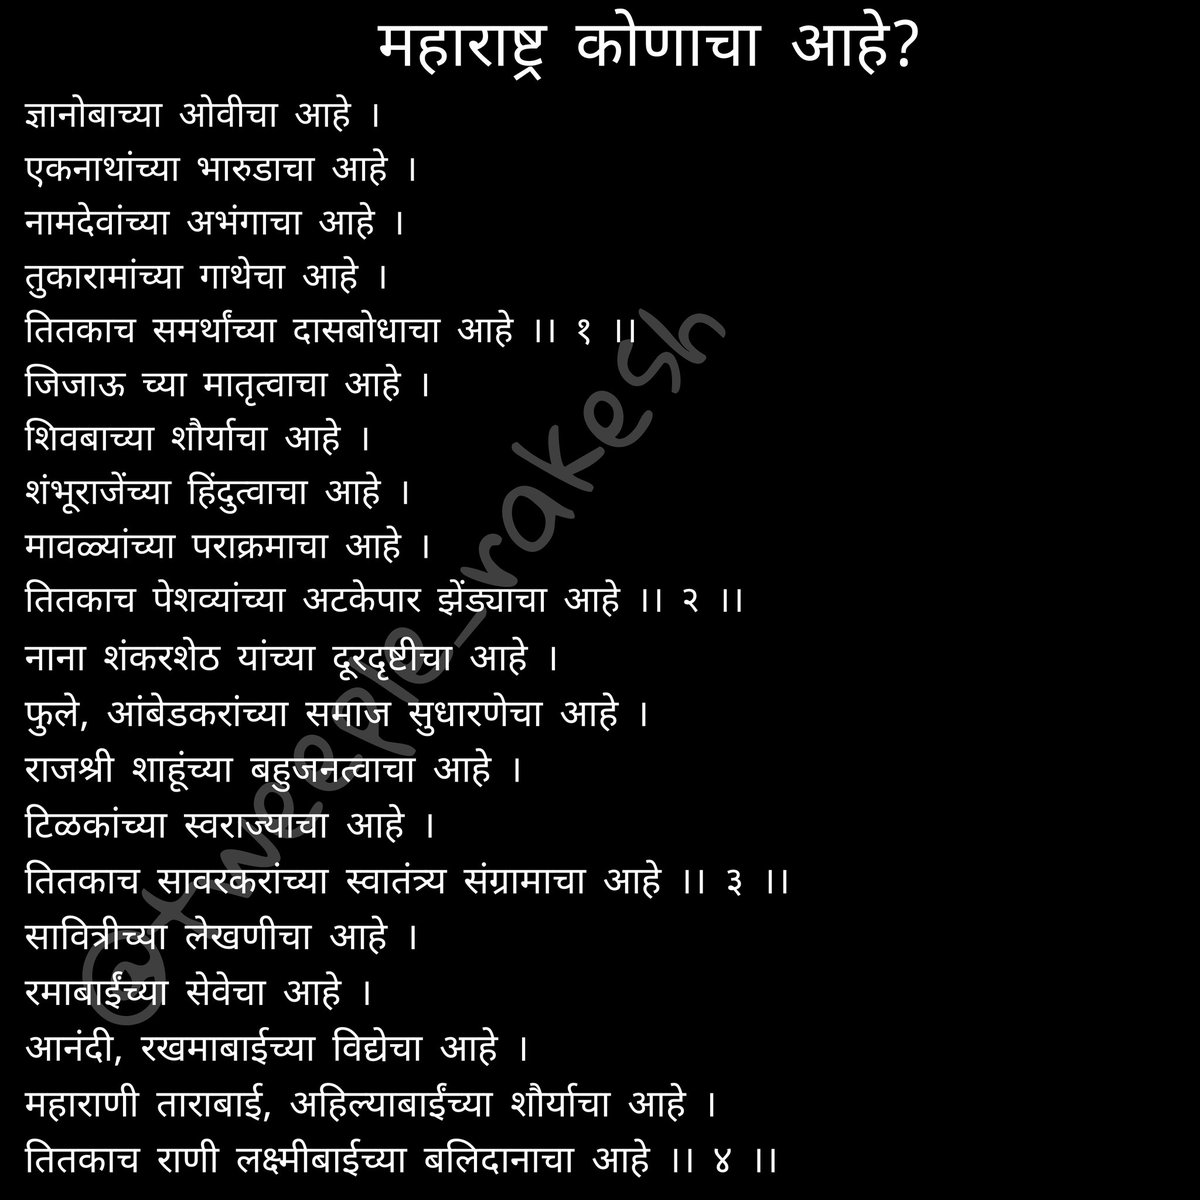 महाराष्ट्रदिनाच्या दिवशी मी लिहलेली जुनी कविता पुन्हा शेअर करतोय...

#महाराष्ट्रदिन 
#MaharashtraDin